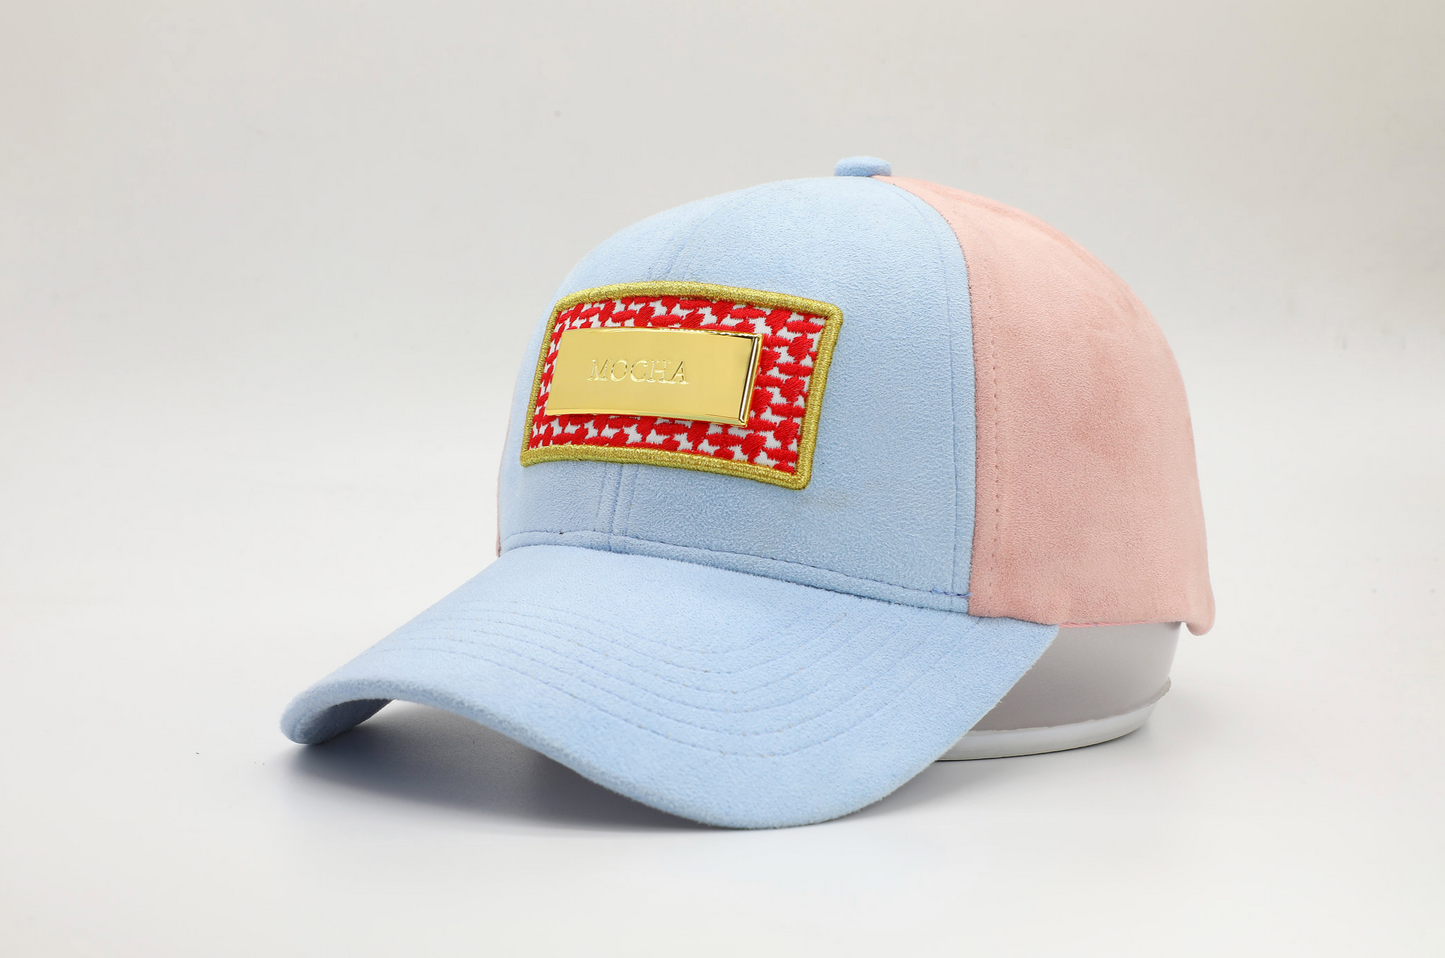 قبعة موكا باللون الأزرق الفاتح والوردي المغبر